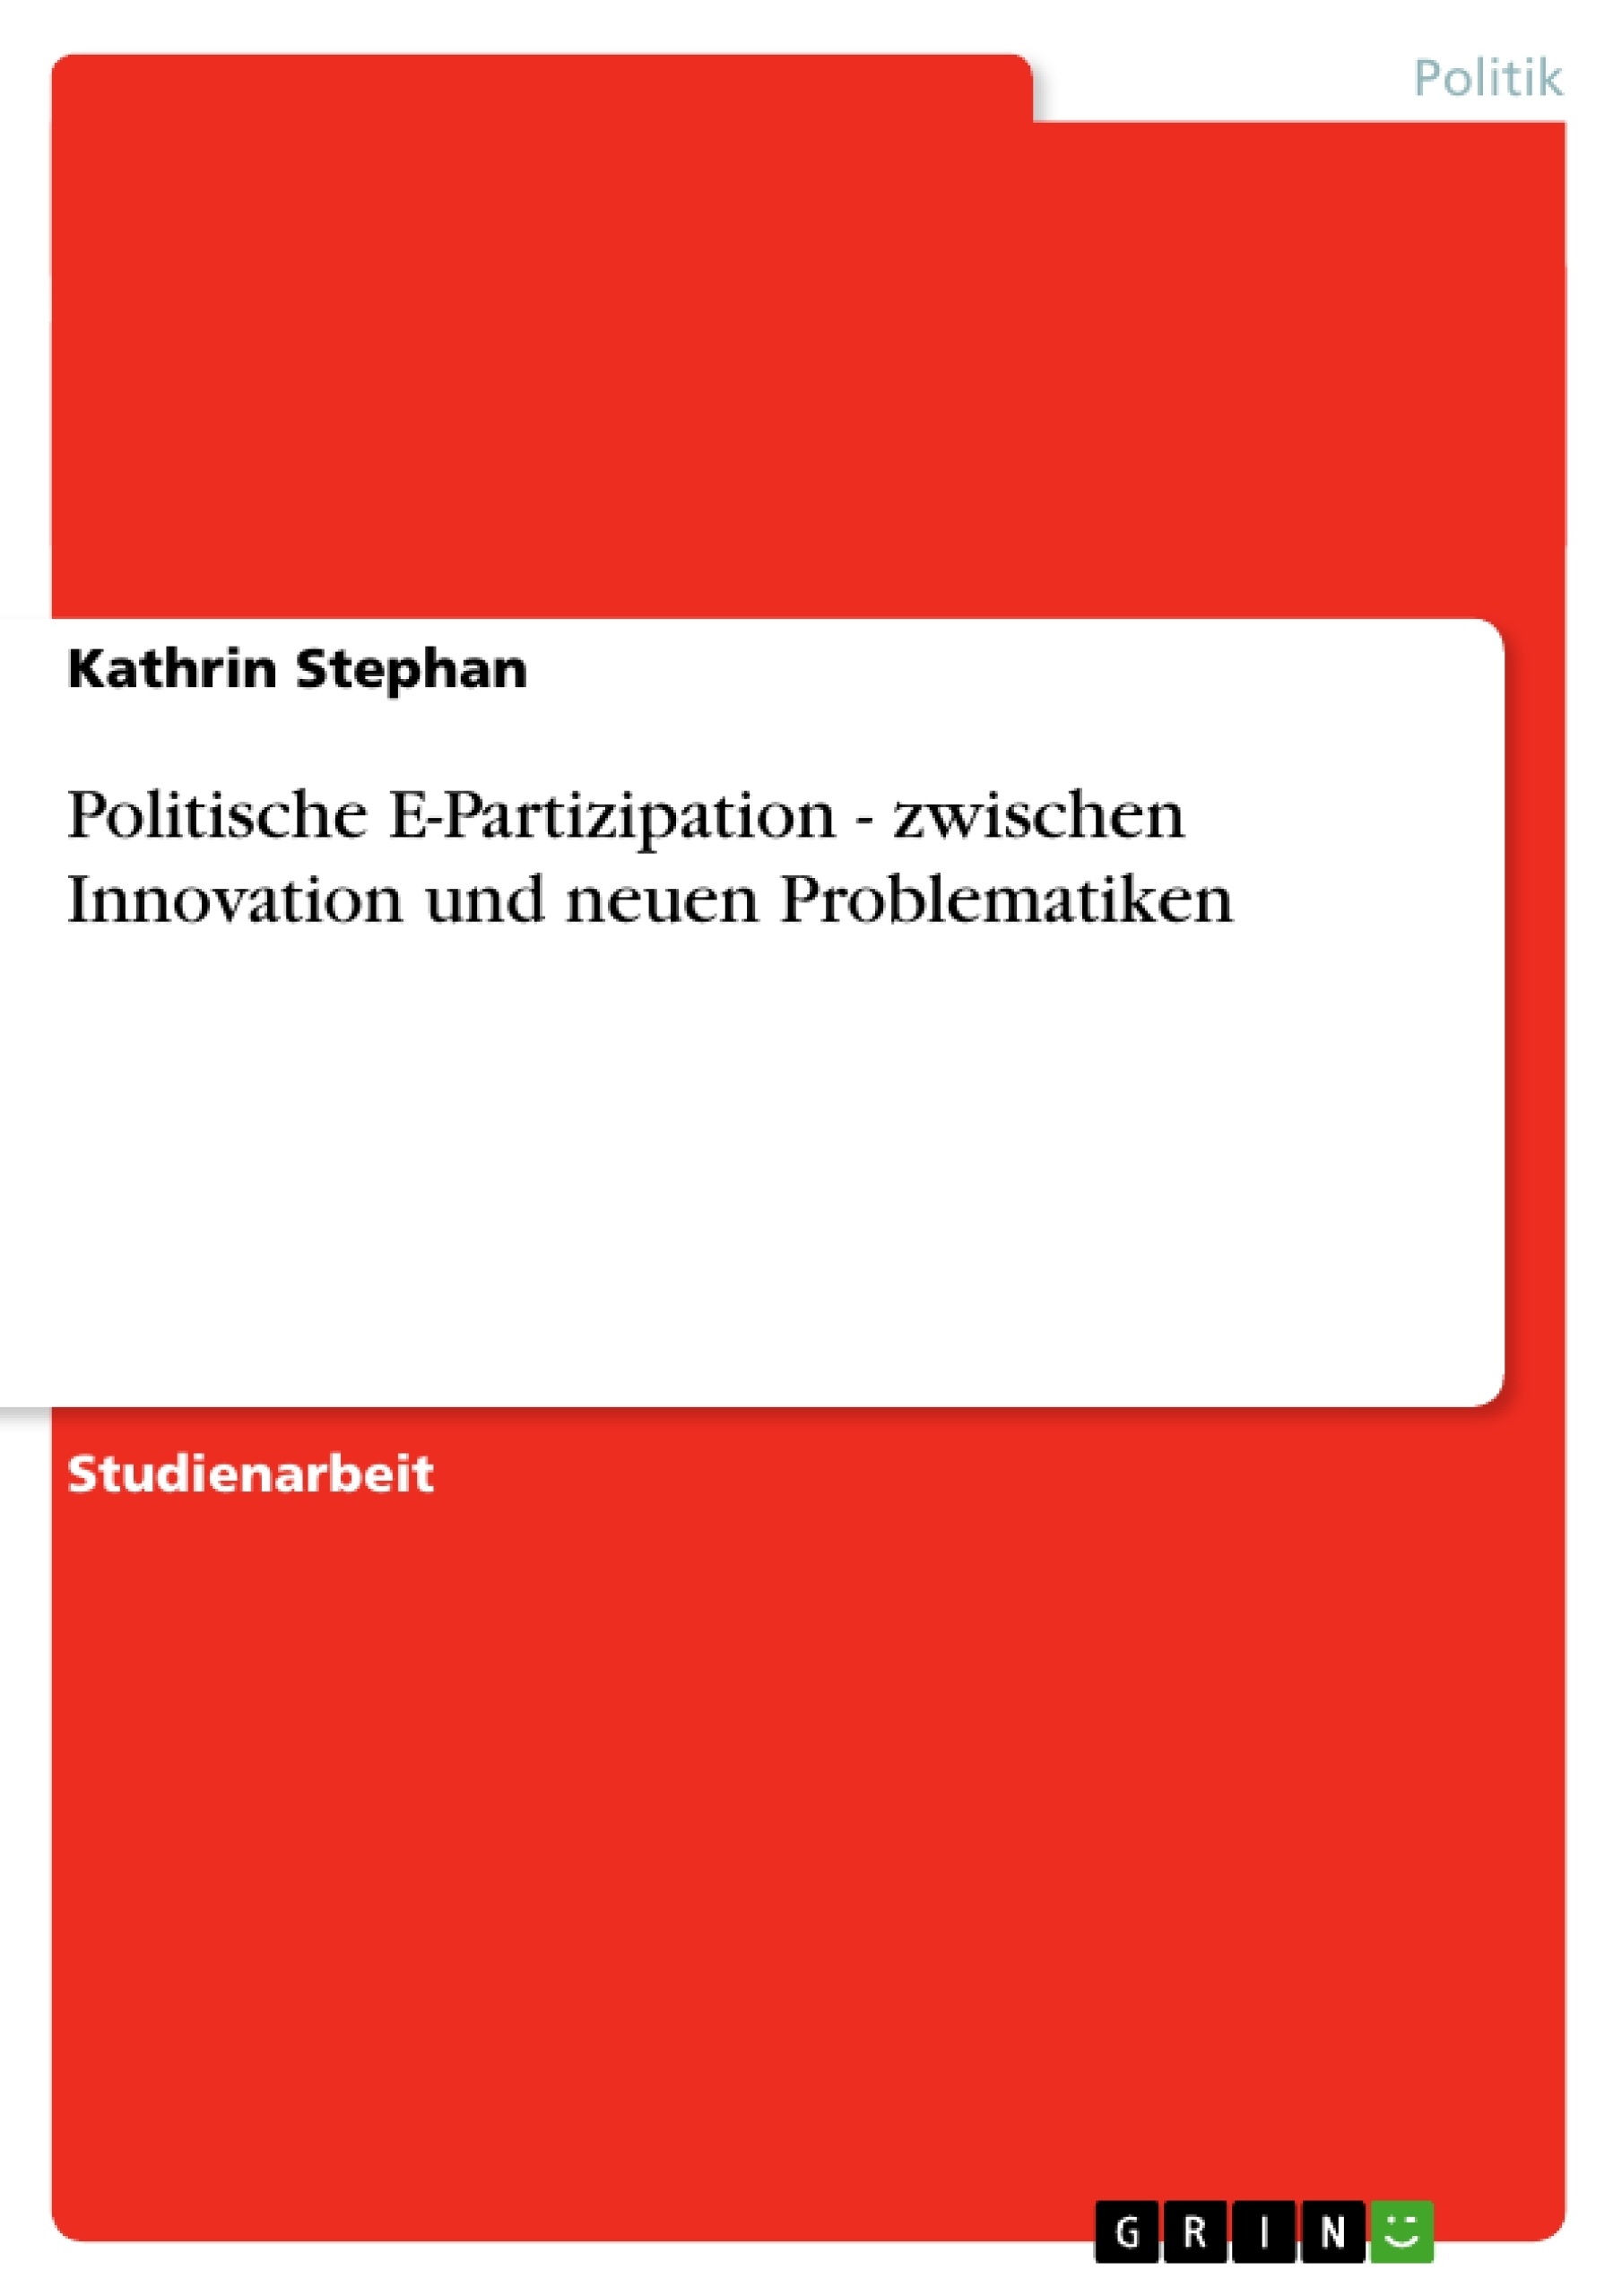 Title: Politische E-Partizipation - zwischen Innovation und neuen Problematiken